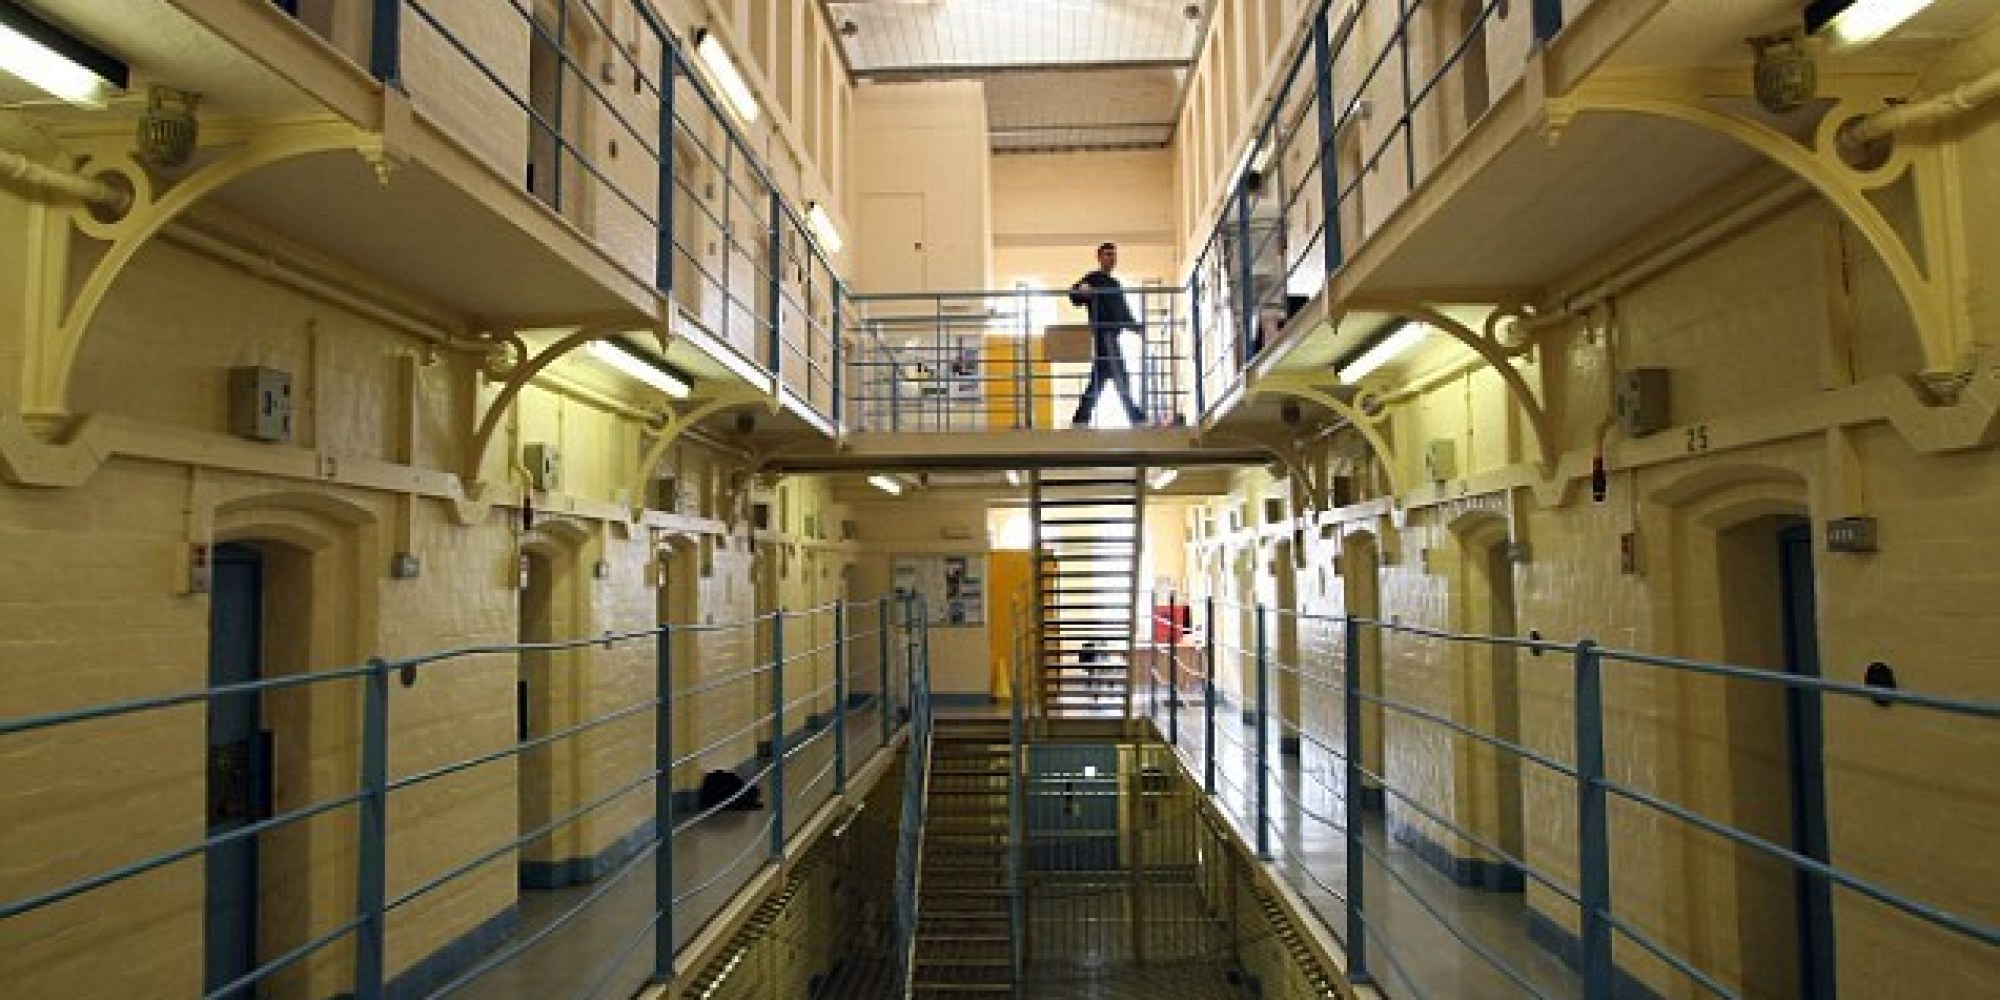 كيف سيطرسجناء على أجزاء من سجن في بريطانيا ؟